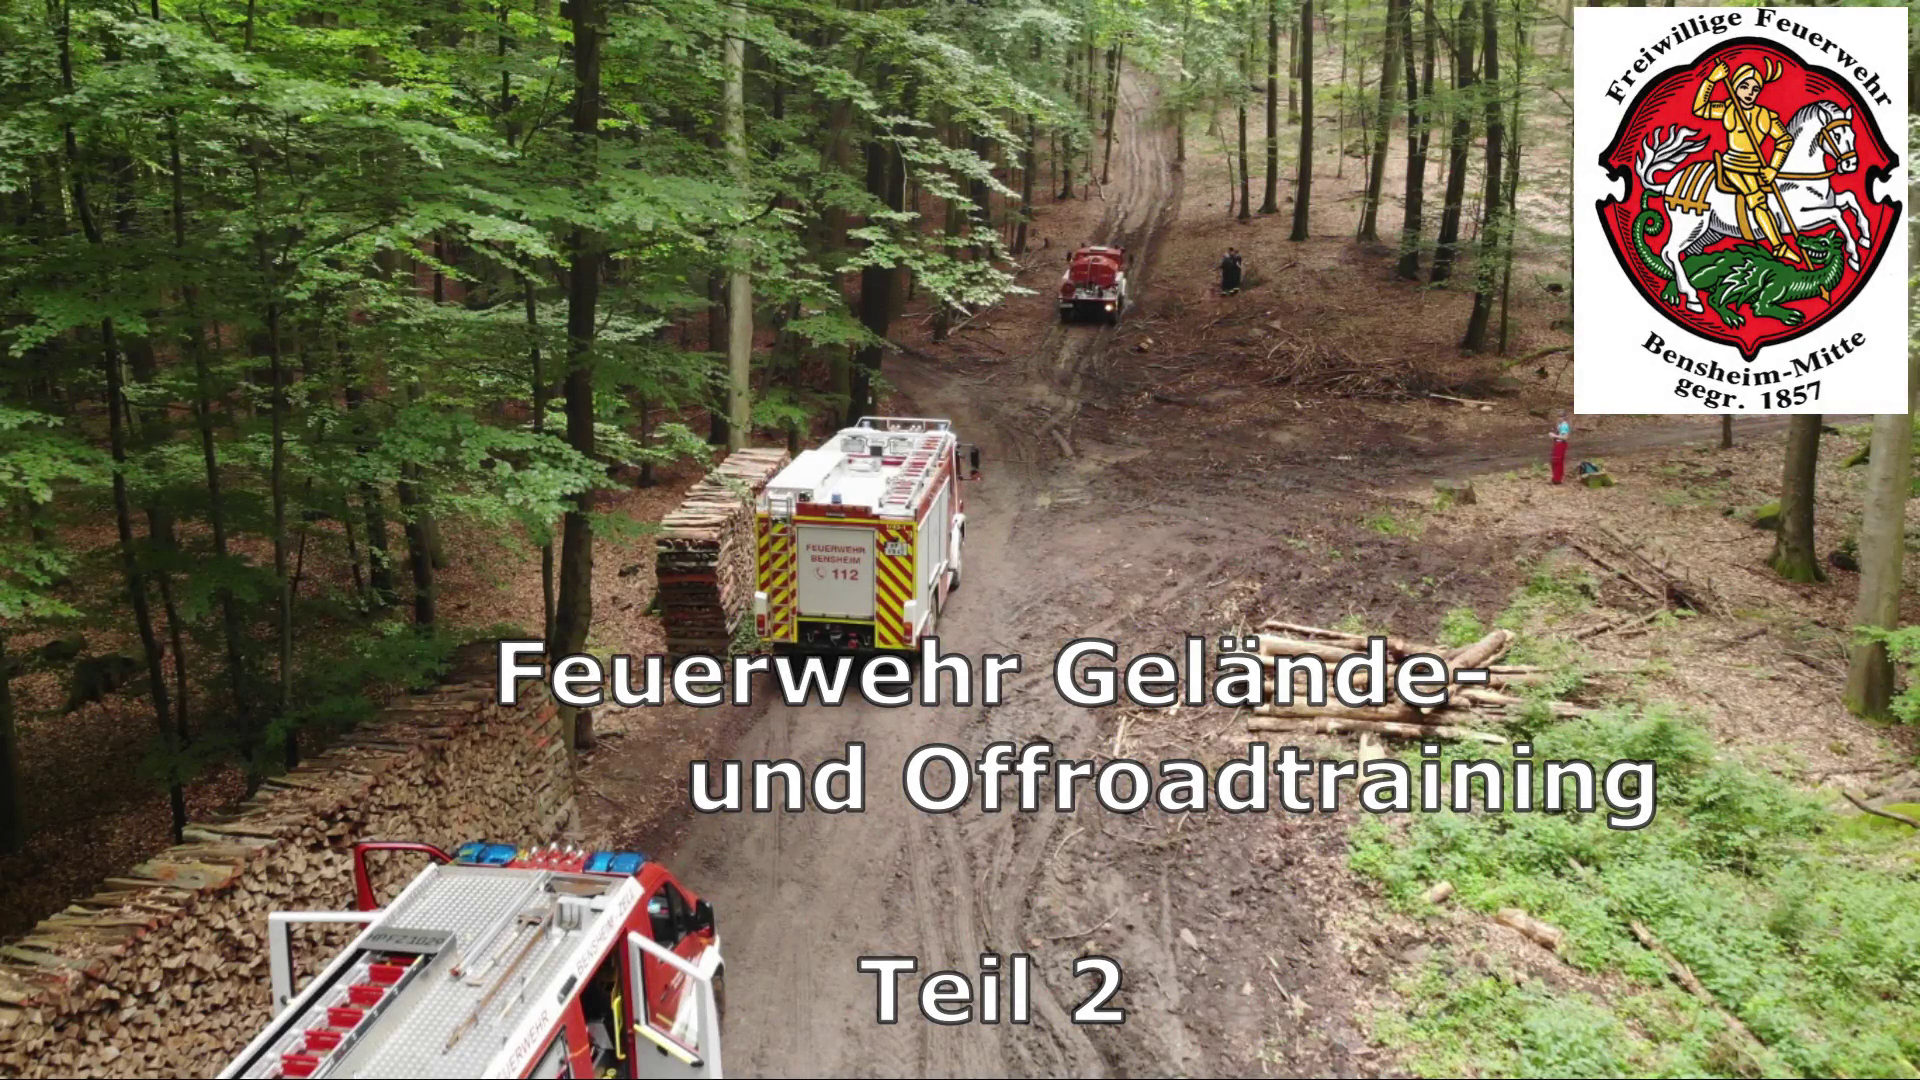 Video vom Geländefahrtraining der Feuerwehren der Stadt Bensheim Teil 2